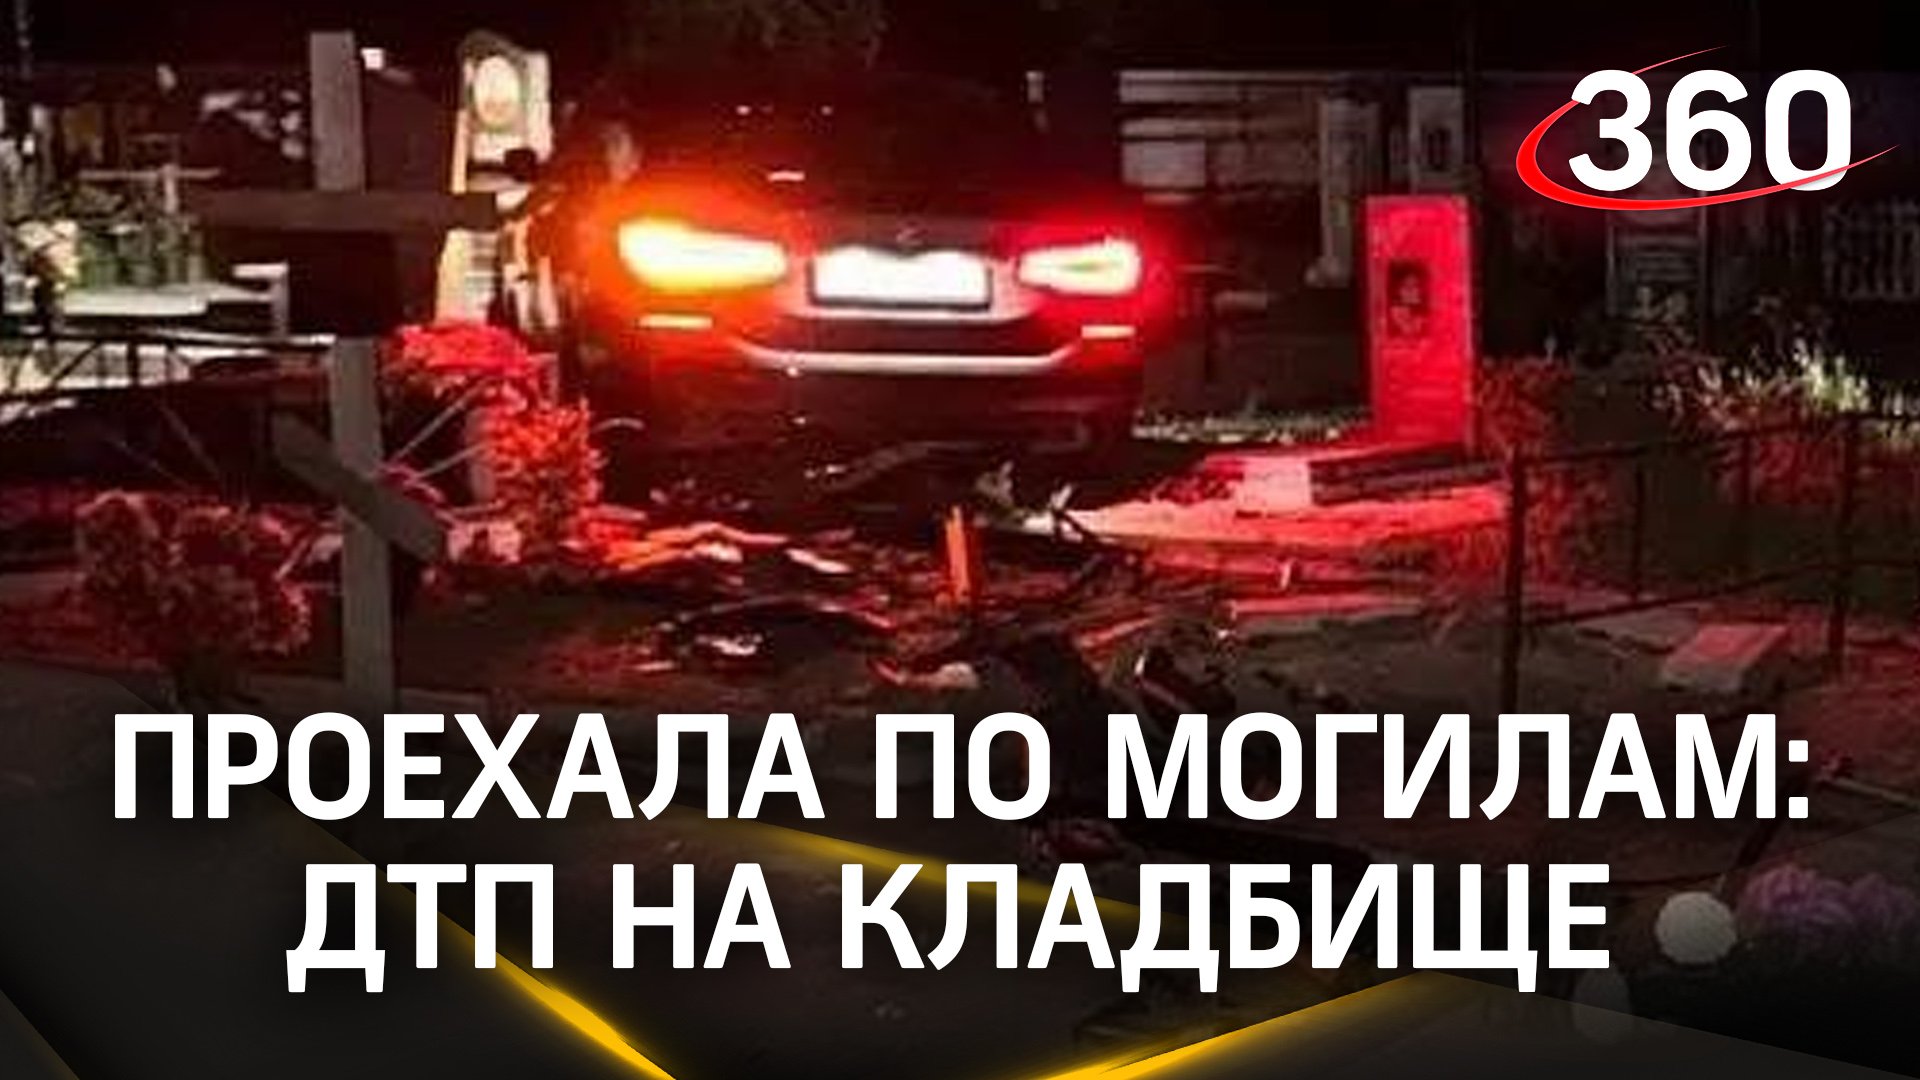 Девушка на BMW снесла могилы - жуткое ДТП на кладбище под Краснодаром